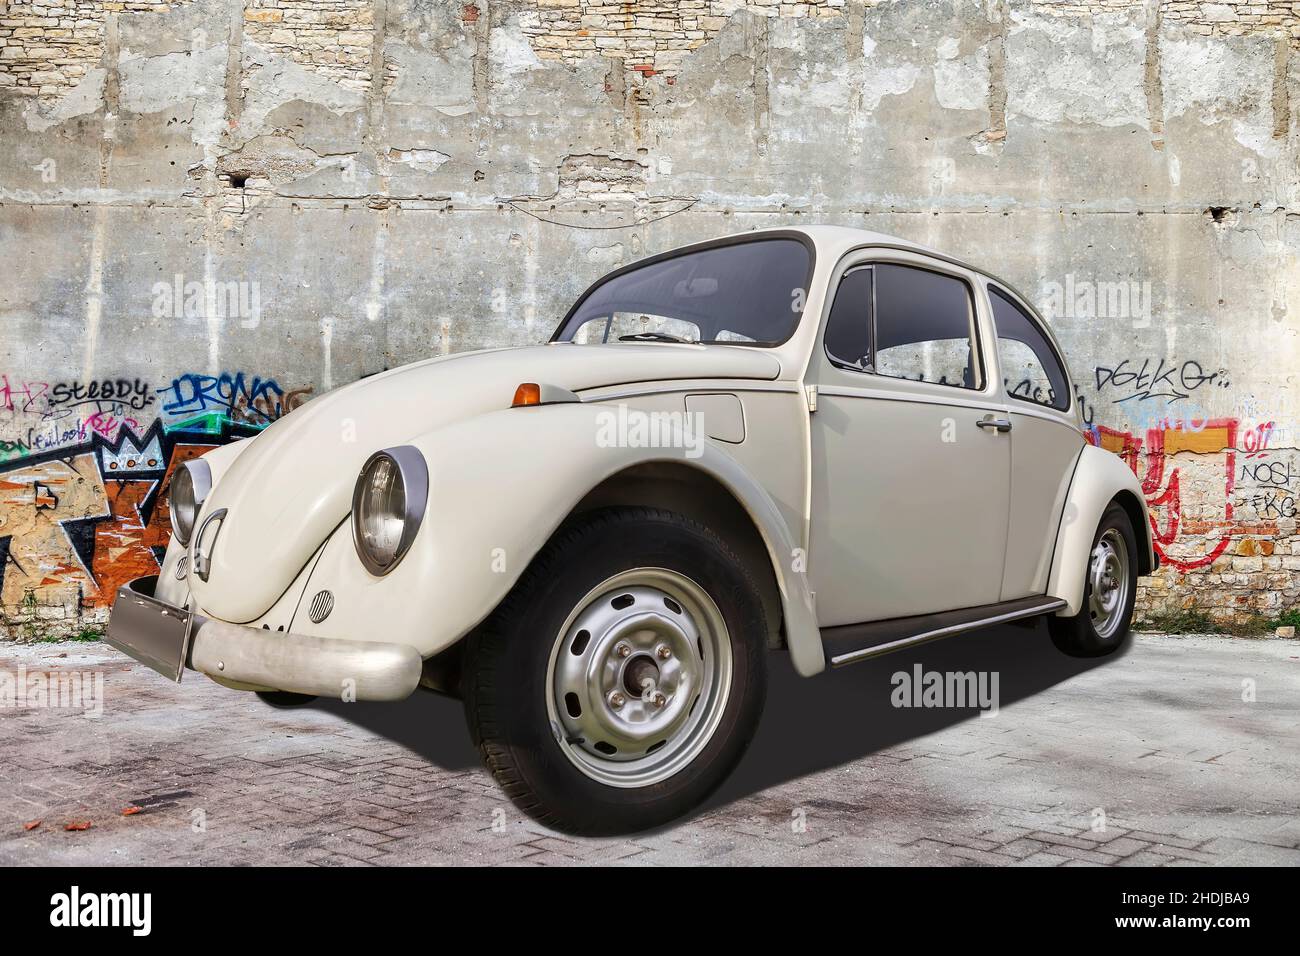 PULA, CROAZIA - 12 DICEMBRE 2016: VW Beetle auto vecchio-timer parcheggiato di fronte al muro con graffiti colorati, Pula, Istria, Croazia Foto Stock